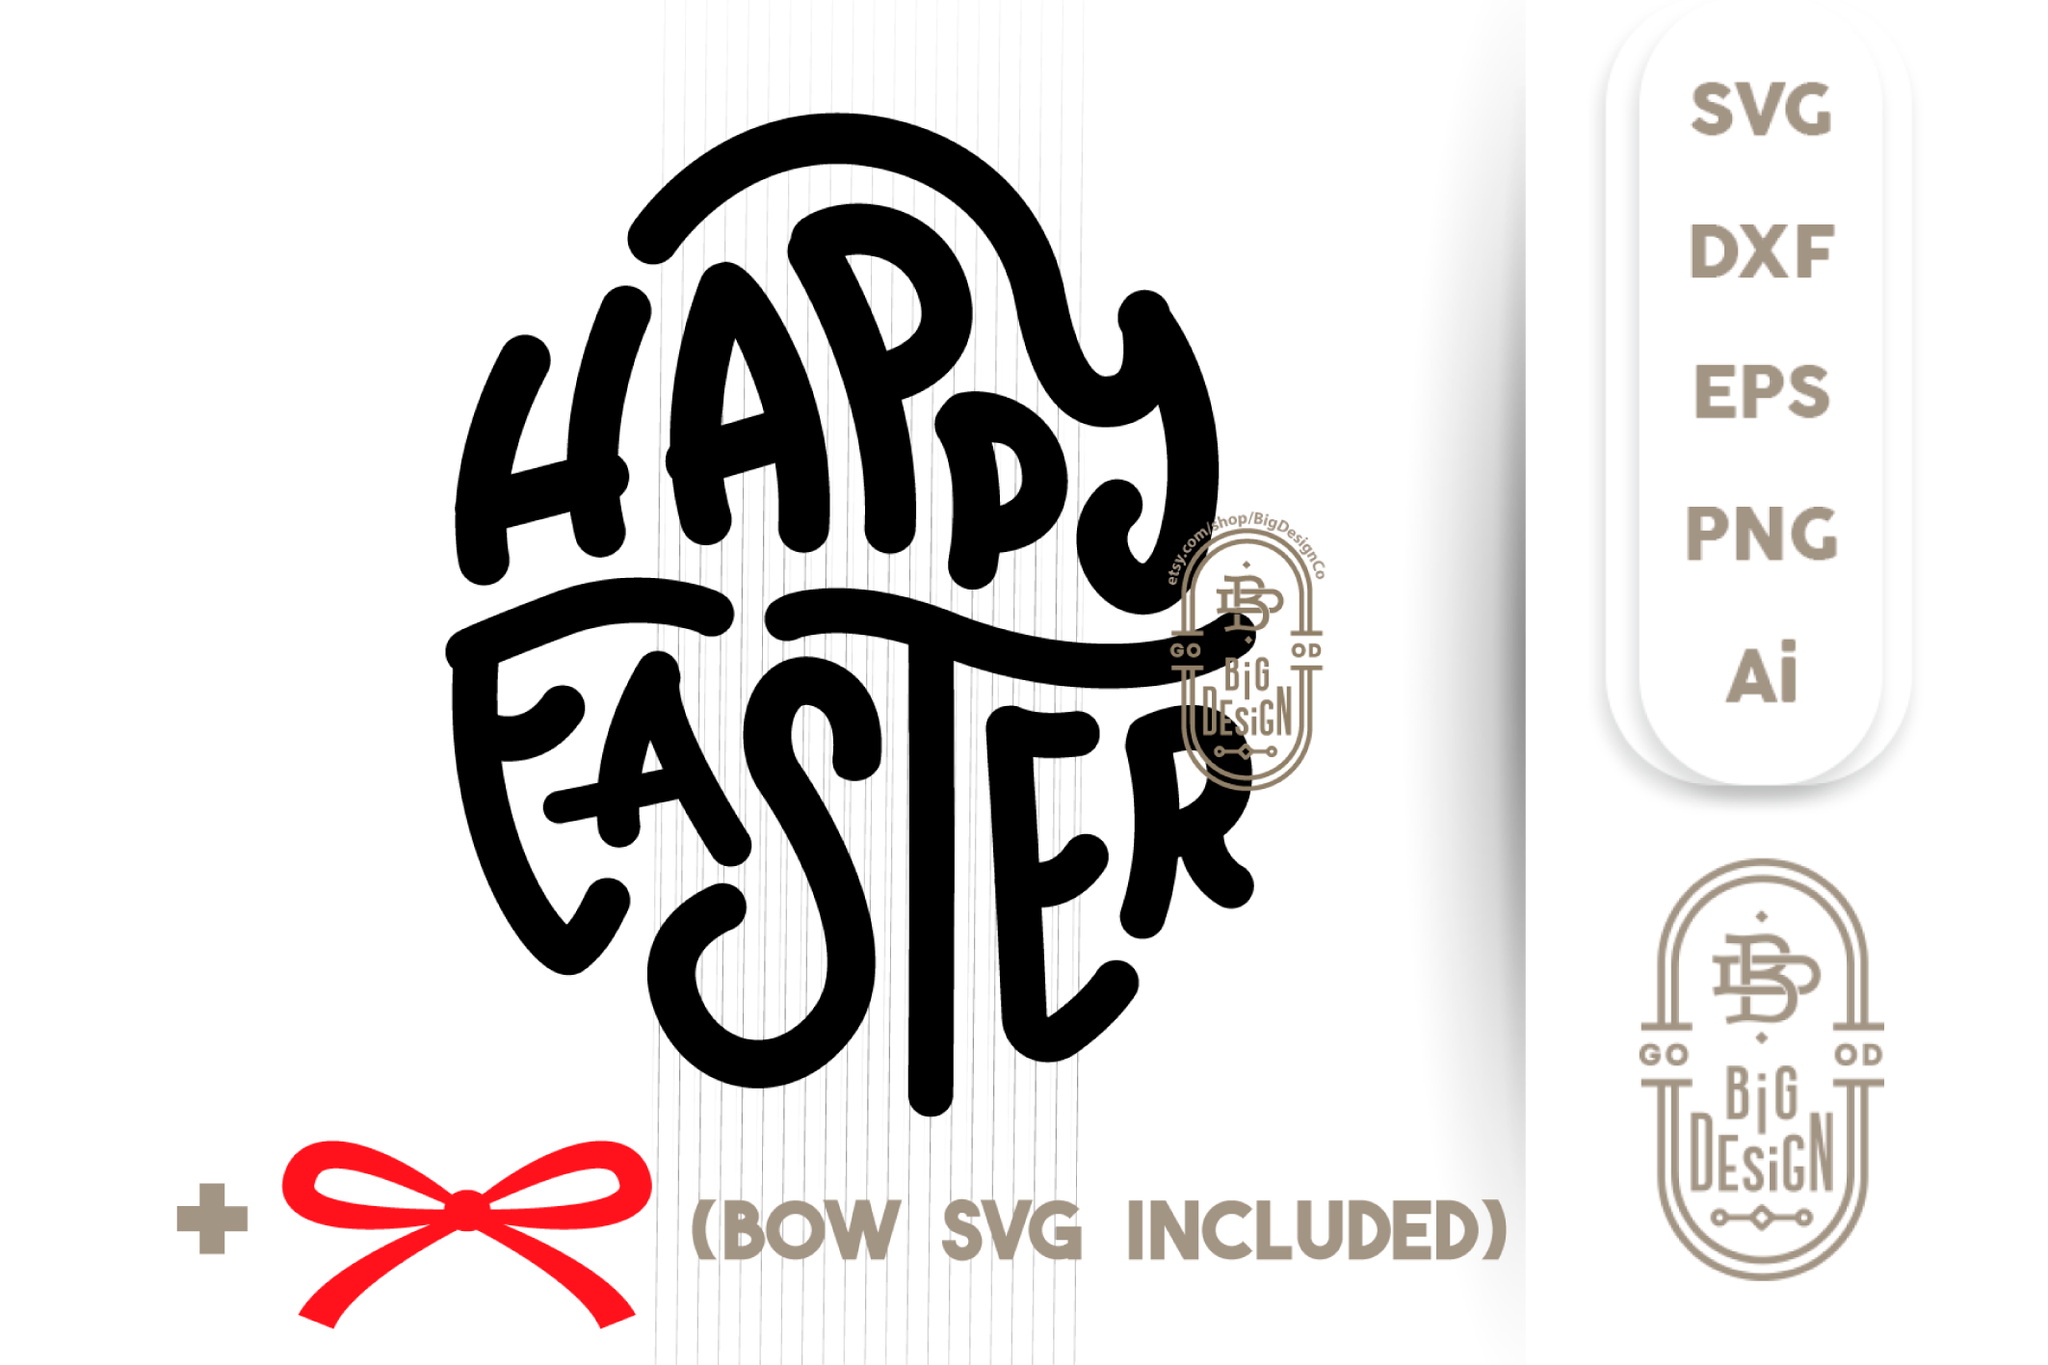 Download Free Svg Happy Easter Svg Easter Svg Easter Egg Svg Design Shopy